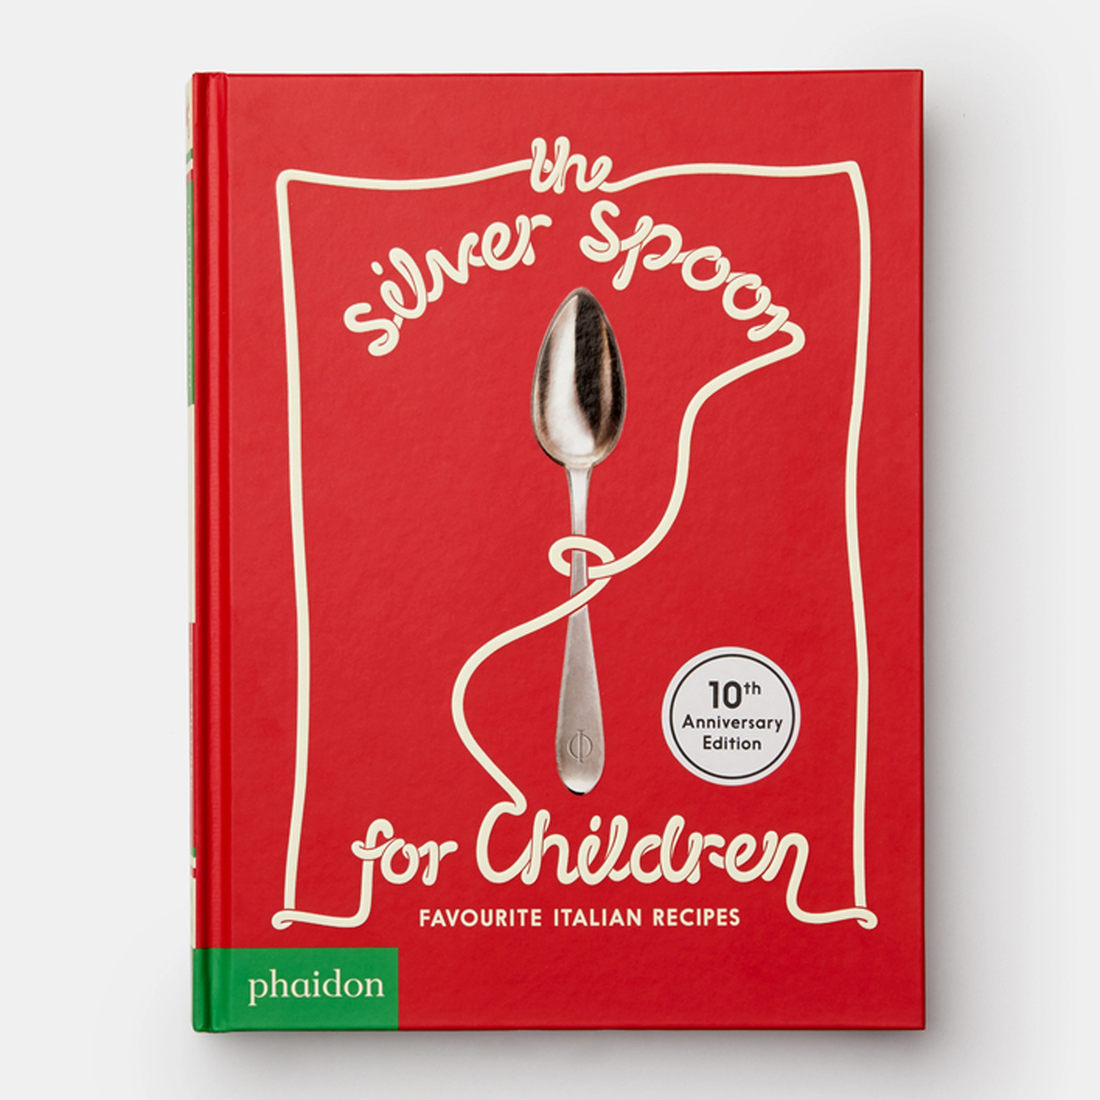 silver spoon for children : italian recipes book